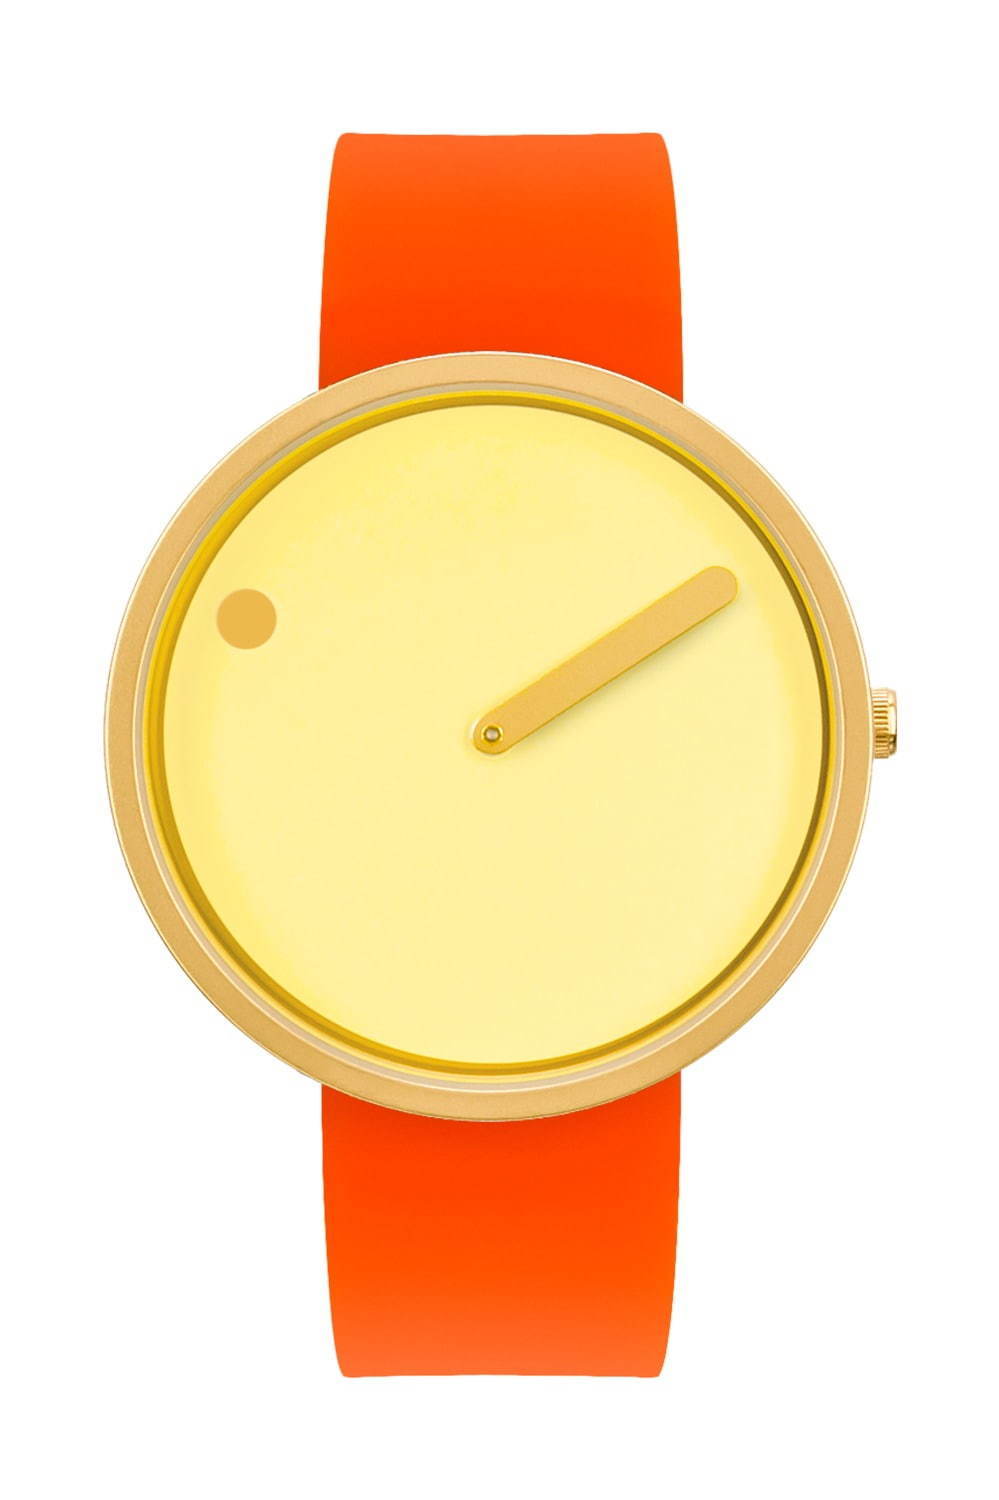 デンマーク発の腕時計「ピクト」ビタミンカラーやデニム素材の夏新作